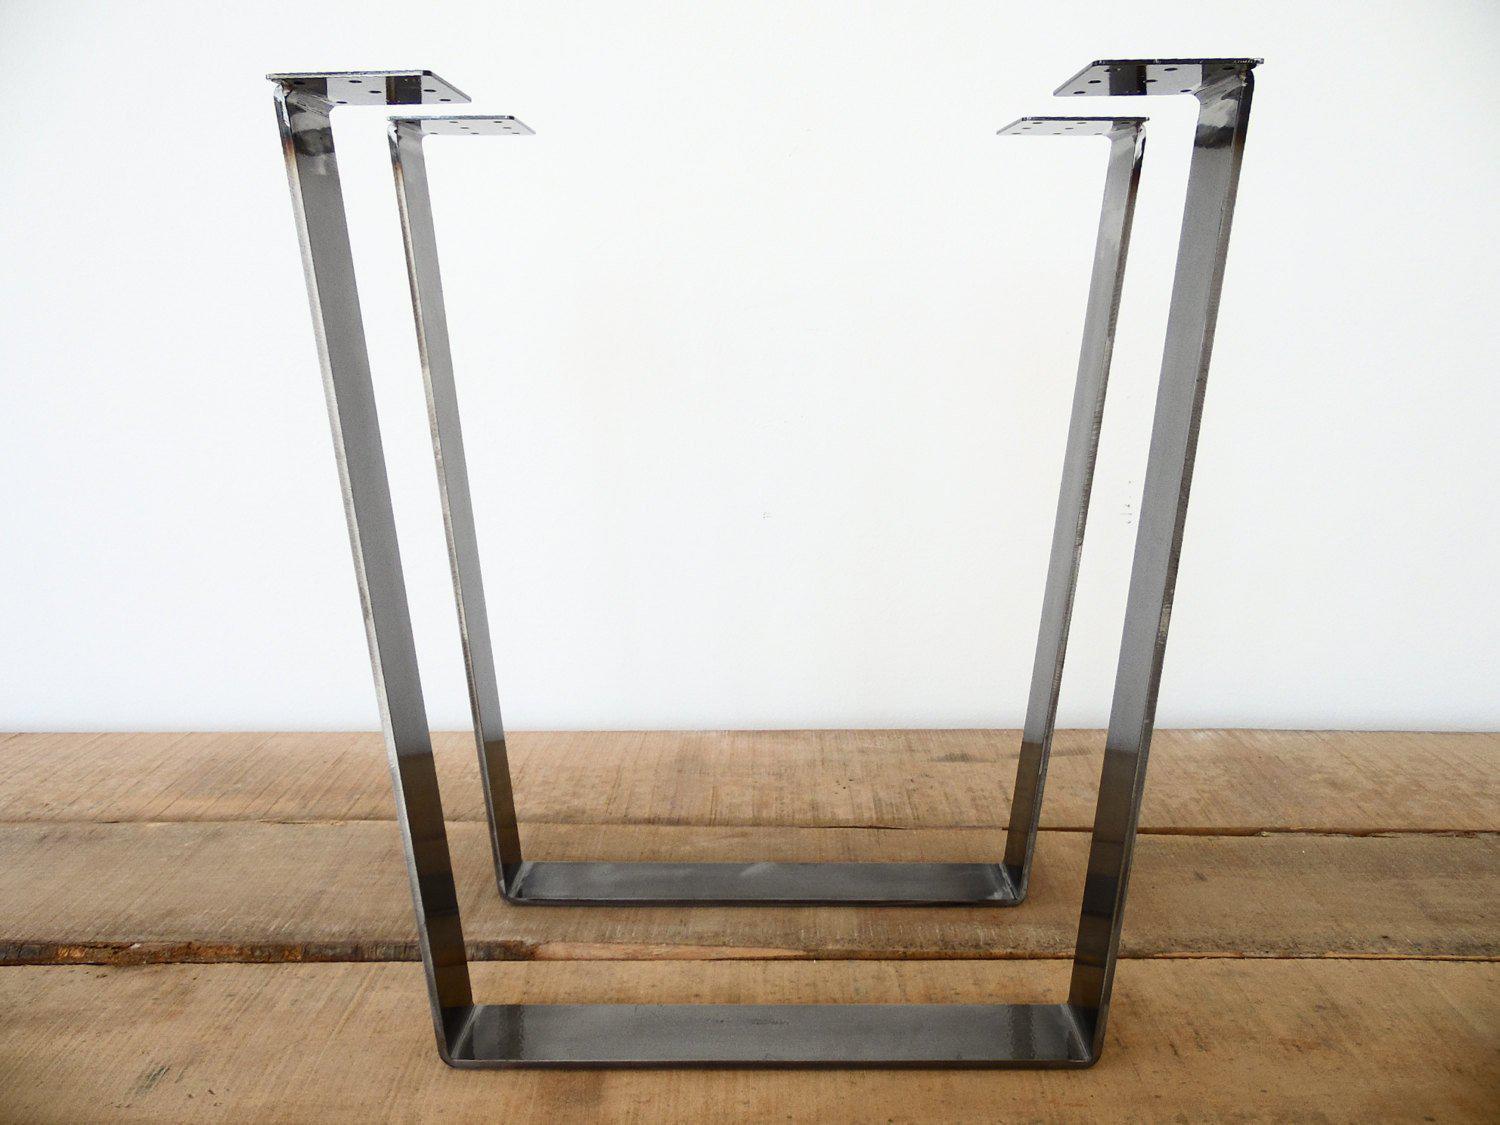 28" Trapezoid Table Legs Flat Steel, Height 26" - 32" , Set(2)